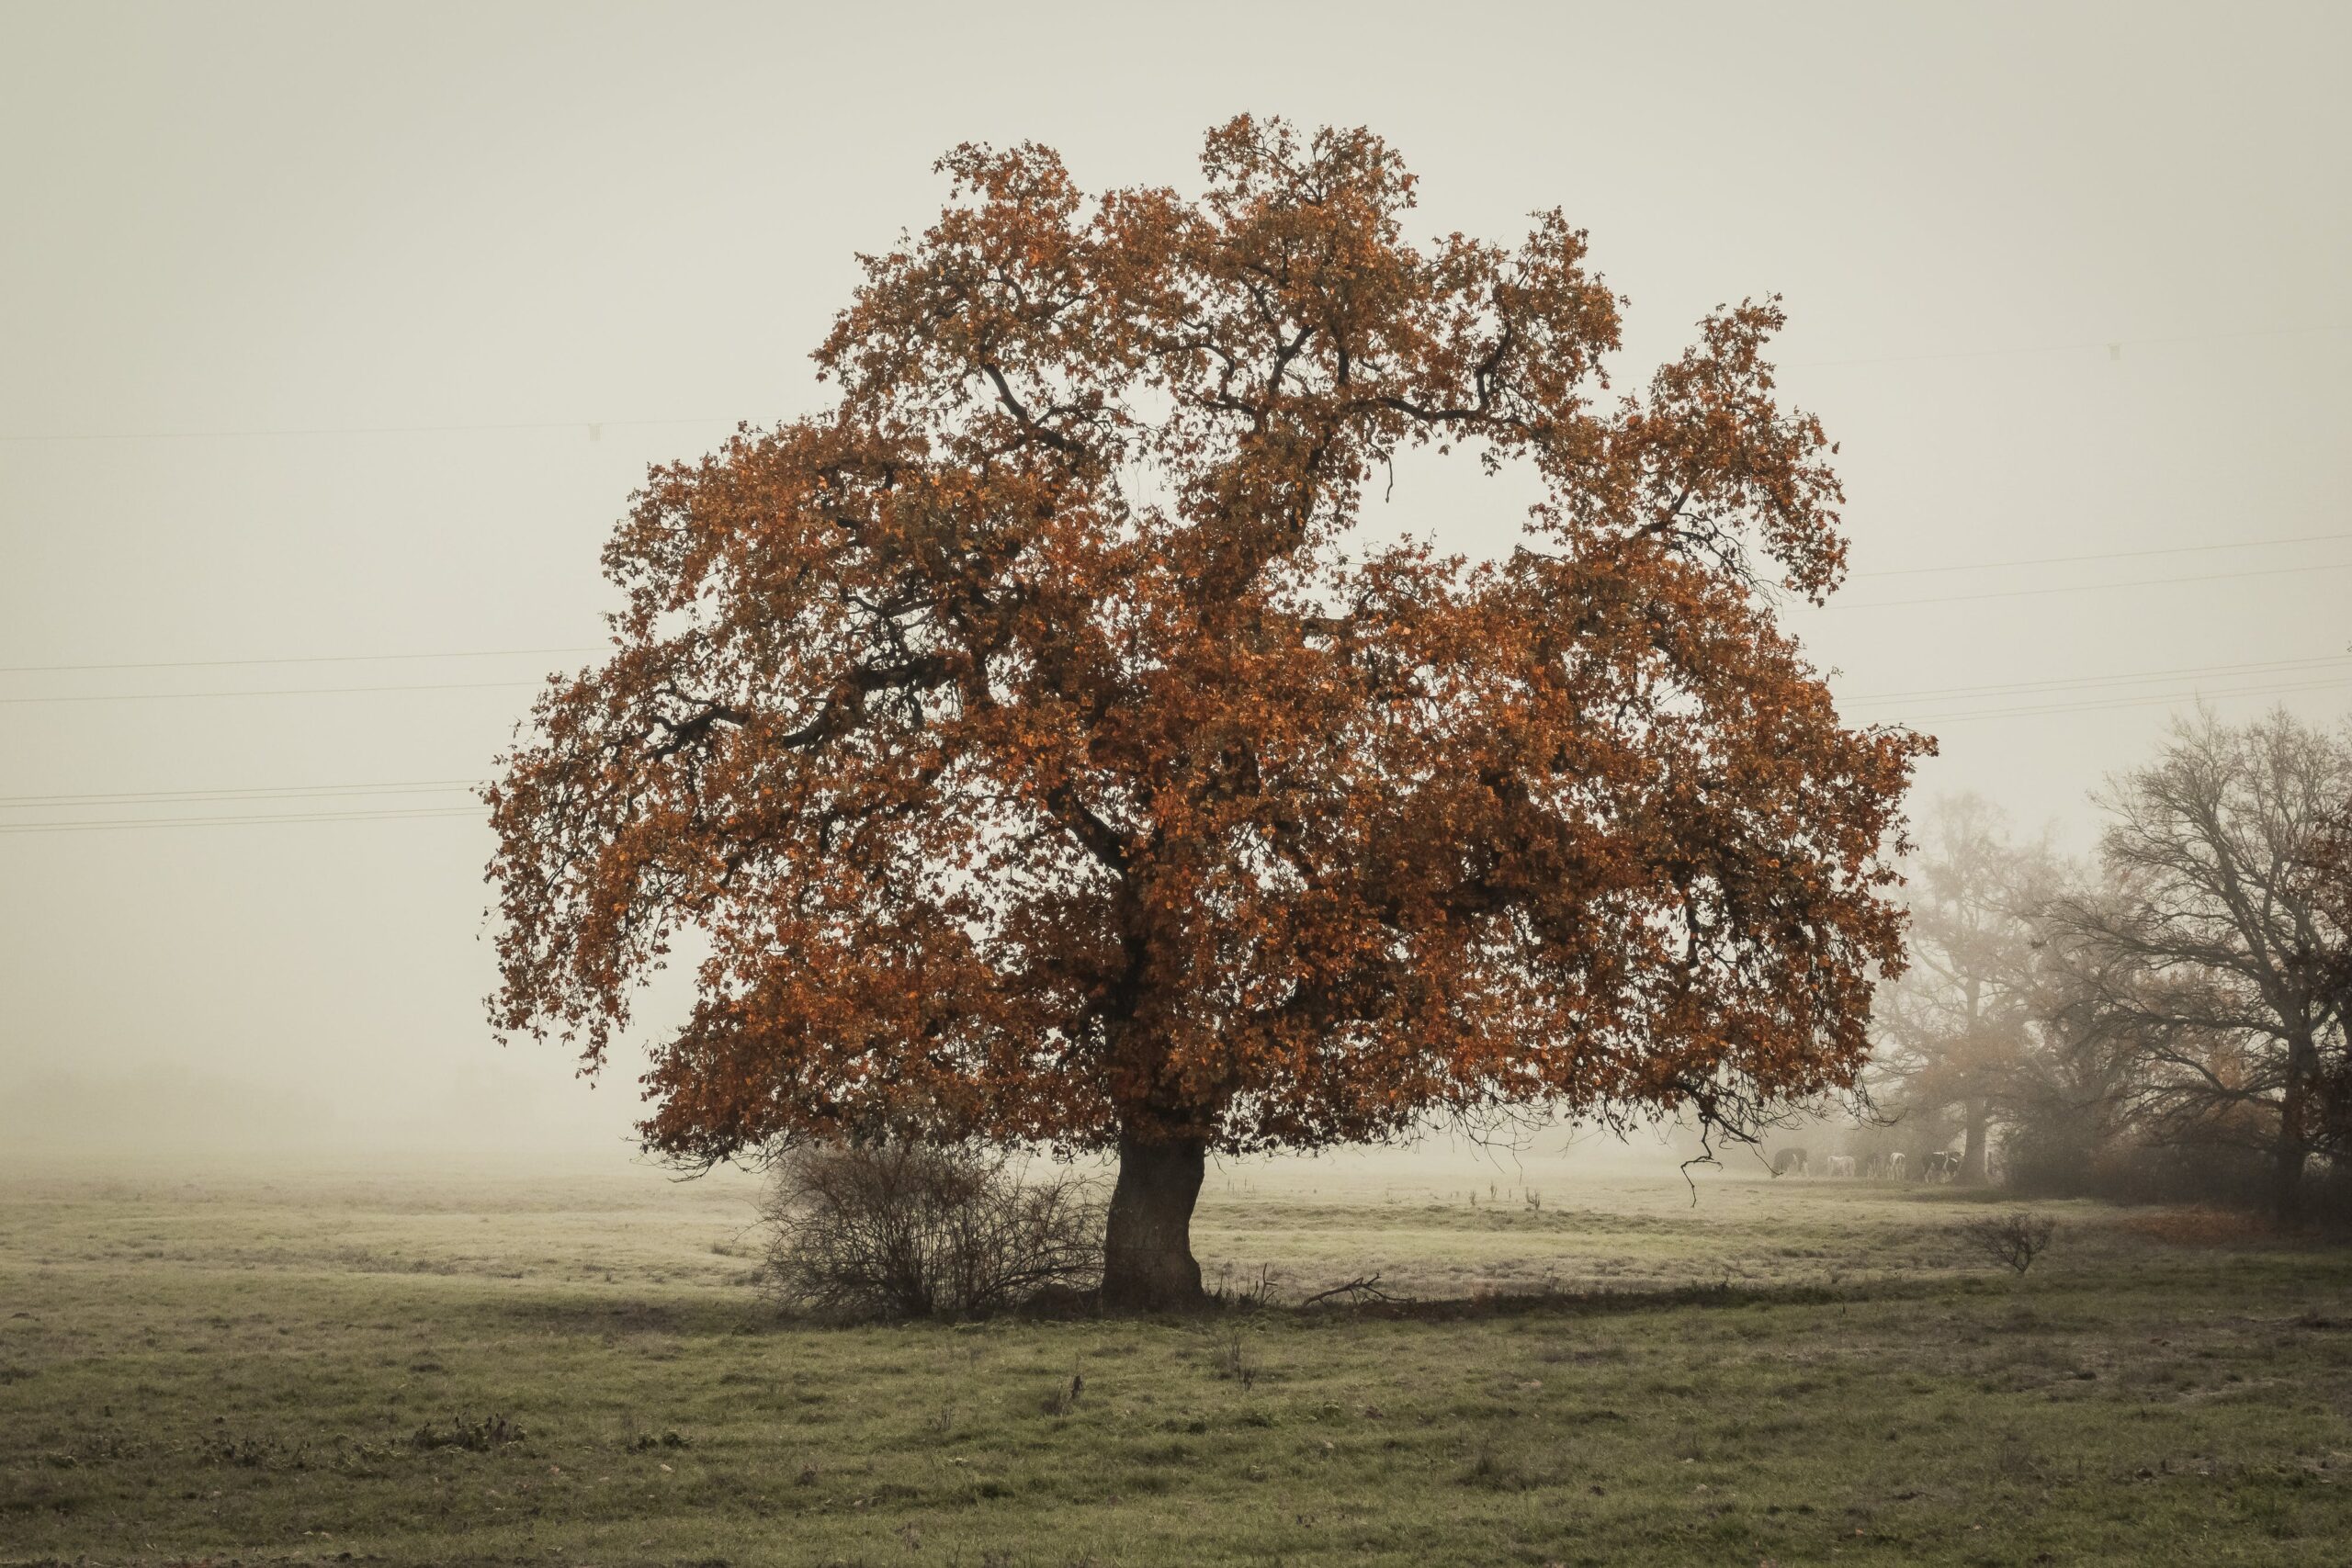 A tree in a foggy field